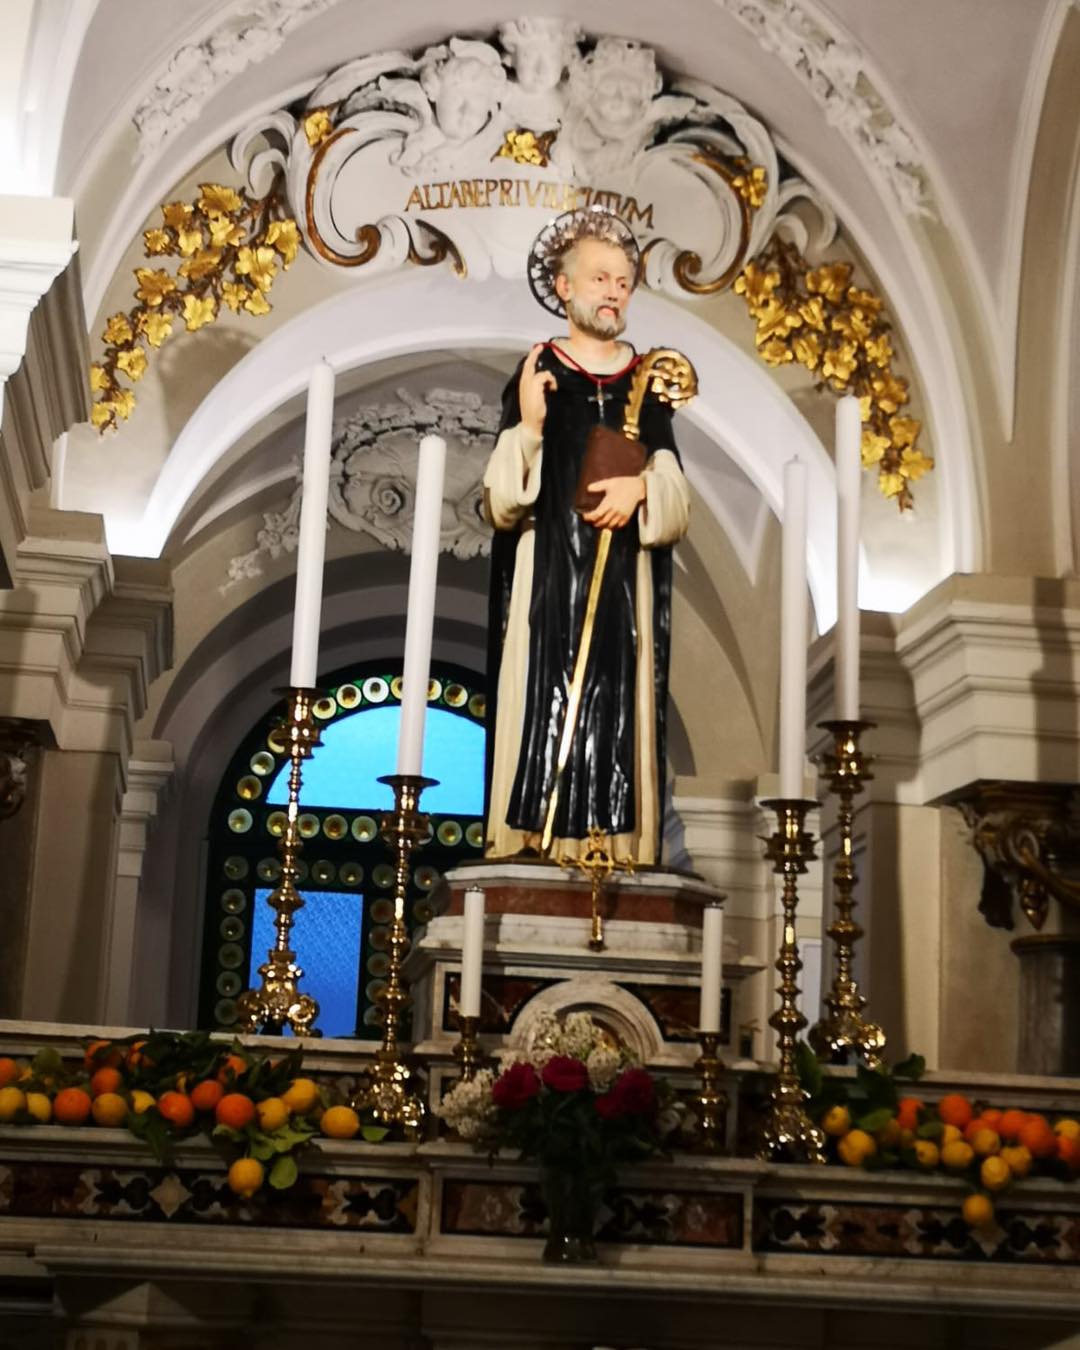 Statuta del Santo nella chiesa di Sorrento